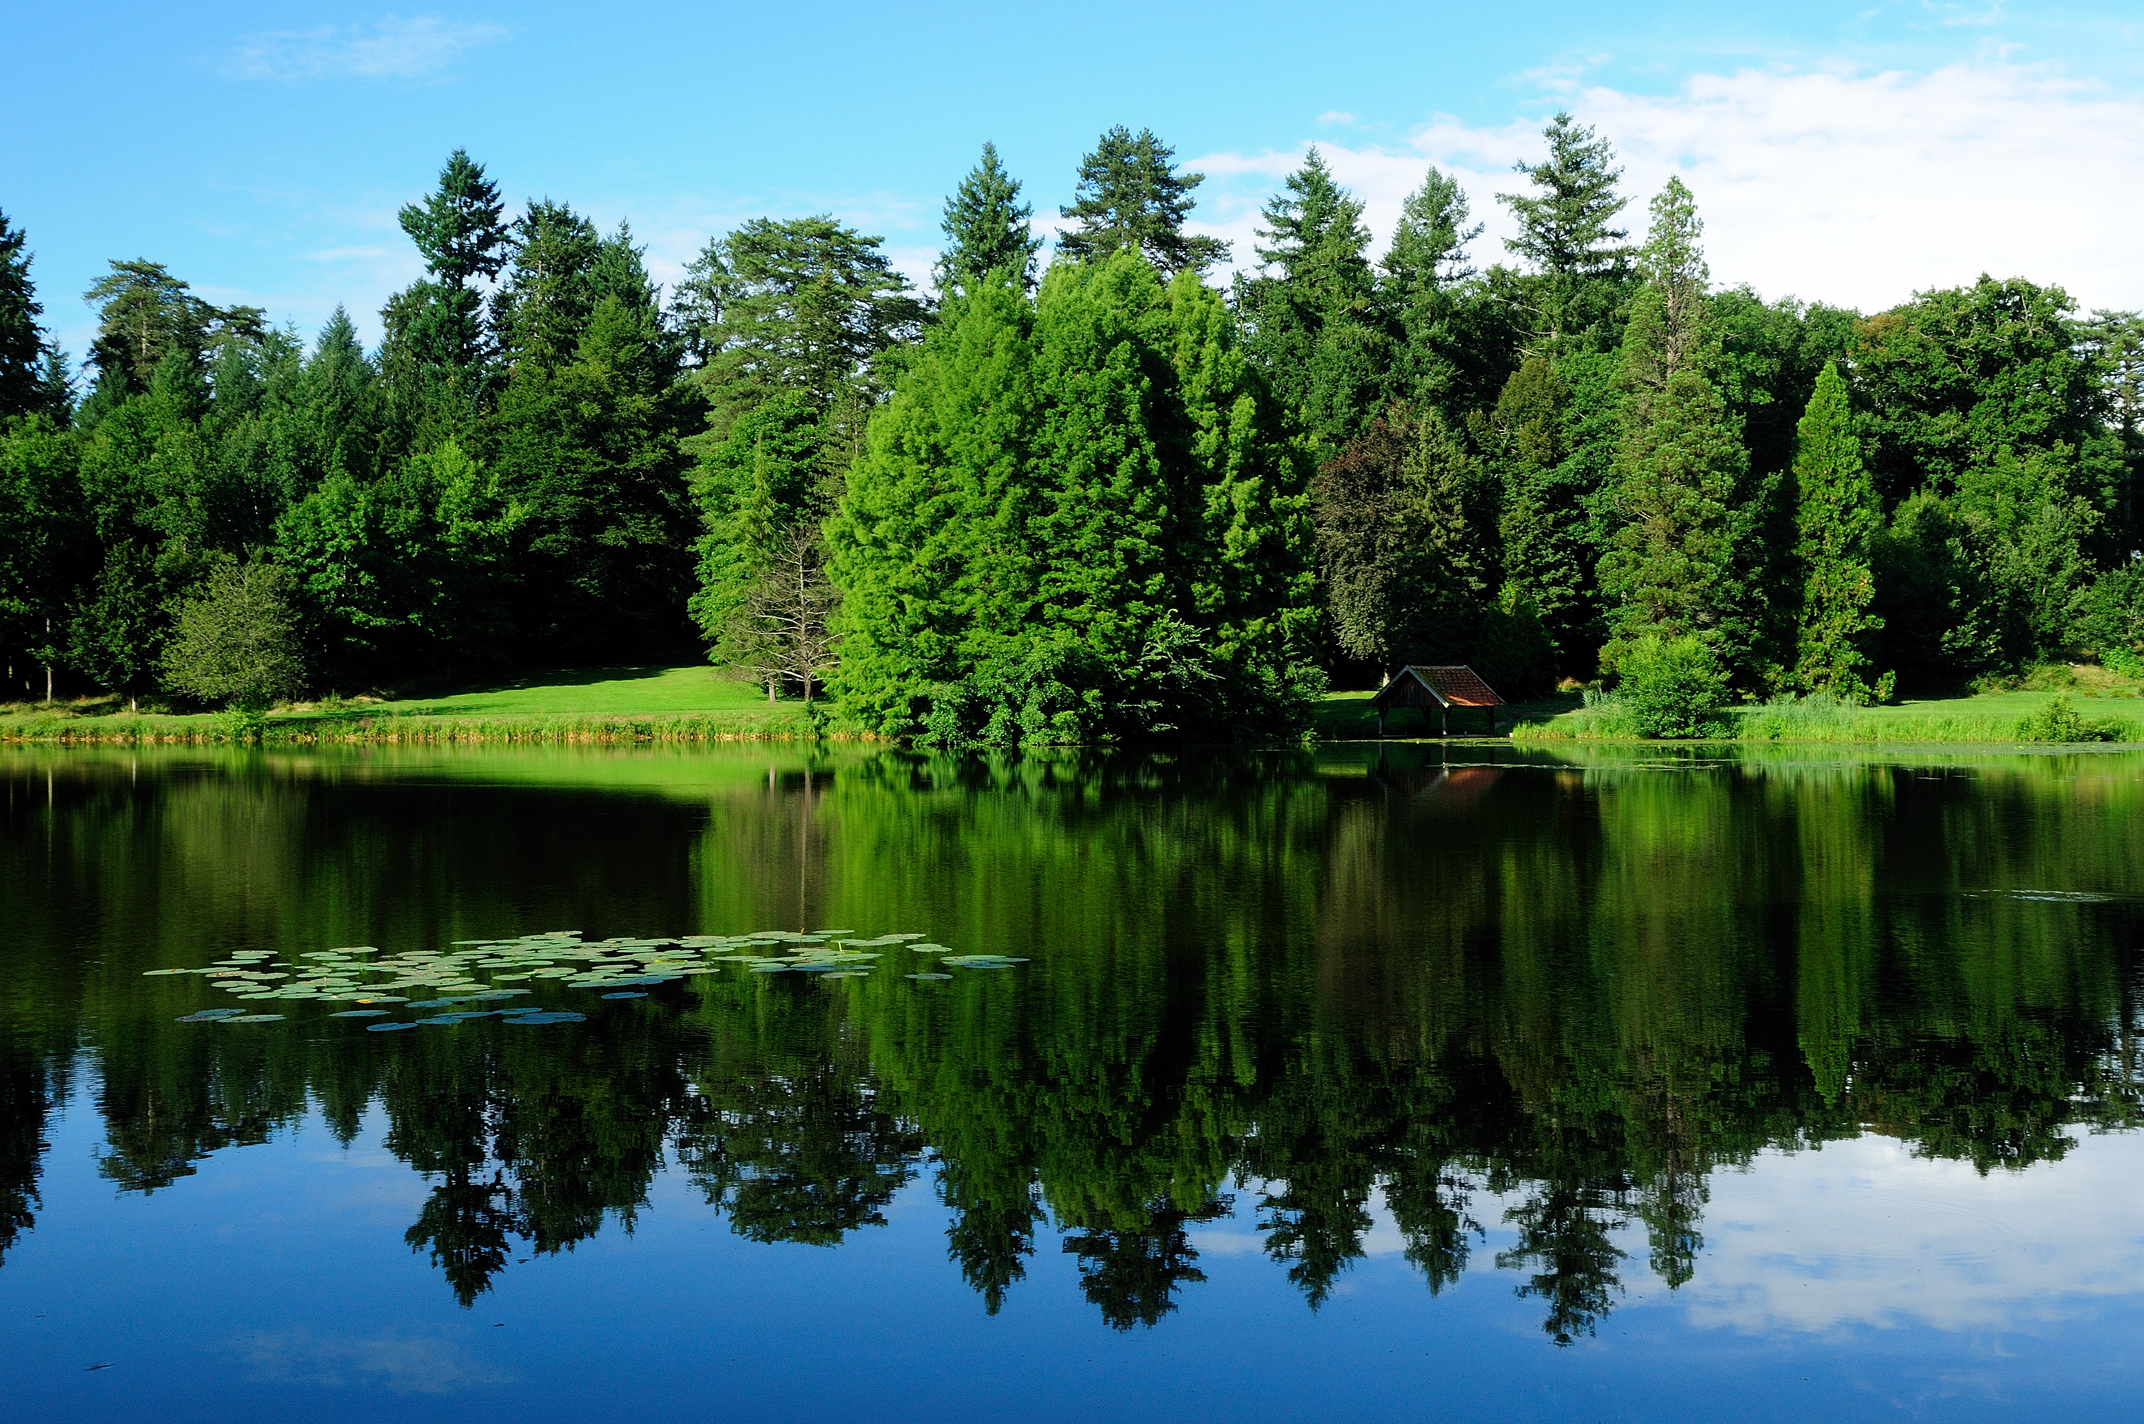 Картинка на обои высокого качества. Озеро в лесу. Лесное озеро. Природа озеро. Природа лес озеро.